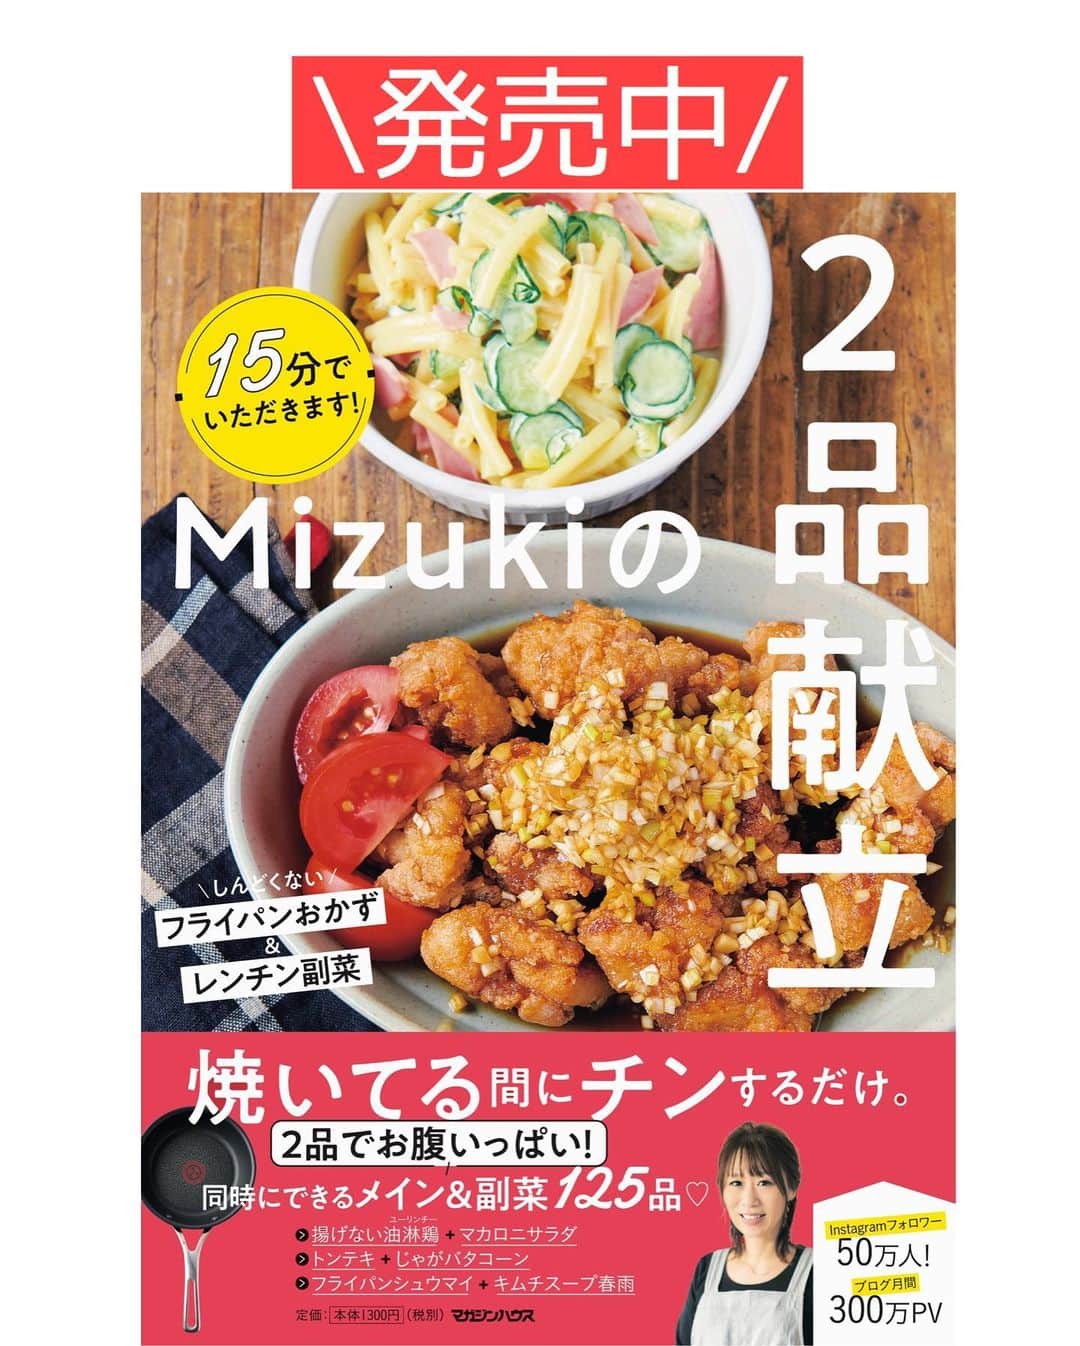 Mizuki【料理ブロガー・簡単レシピ】さんのインスタグラム写真 - (Mizuki【料理ブロガー・簡単レシピ】Instagram)「・﻿ 【#レシピ 】ーーーーーーーーーー﻿ ♡肉団子と野菜のおかずスープ♡﻿ ーーーーーーーーーーーーーーーー﻿ ﻿ ﻿ ﻿ おはようございます(*^^*)﻿ ﻿ 今日ご紹介させていただくのは﻿ メインにもなるおかずスープ♡﻿ 野菜たっぷりでヘルシーな上に﻿ 肉団子入りで食べ応えもありますよ〜♩﻿ ﻿ 作り方は超簡単(*´艸`)﻿ 肉団子は材料一気に混ぜるだけ！﻿ スープは最初に味付けするから﻿ 味がぴったり決まります♡﻿ ﻿ ひき肉も野菜もアレンジできるので﻿ お気軽にお試し下さいね(*^^*)﻿ ﻿ ﻿ ﻿ ＿＿＿＿＿＿＿＿＿＿＿＿＿＿＿＿＿＿＿＿﻿ 【2人分】﻿ ●鶏ひき肉...150g﻿ ●片栗粉・酒...各小1﻿ ●塩こしょう...少々﻿ 玉ねぎ...1/4個﻿ 人参...1/3本﻿ 白菜...100g﻿ ☆水...500ml﻿ ☆鶏がらスープ...大1﻿ ☆醤油・ごま油...各小1﻿ (好みで)ごま...適量﻿ ﻿ 1.ボウルに●を入れてよく混ぜる。玉ねぎは薄切り、人参は細切り、白菜はざく切りにする。﻿ 2.鍋に☆を入れて火にかけ、煮立ったら1の肉だねを3cm大に丸めて入れ、中火で2分煮る。続けて野菜も加え、たまに混ぜながら5分煮る。﻿ 3.器に盛り、ごまを振る。﻿ ￣￣￣￣￣￣￣￣￣￣￣￣￣￣￣￣￣￣￣￣﻿ ﻿ ﻿ ﻿ 《ポイント》﻿ ♦︎鶏ひき肉の代わりに豚ひき肉でも♩﻿ ♦︎野菜はあるものでアレンジOK♩キャベツ、小松菜、きのこ、長ねぎなども合います♩﻿ ﻿ ﻿ ﻿ ﻿ ﻿ ﻿ ﻿ ＿＿＿＿＿＿＿＿＿＿＿＿＿＿＿＿＿＿﻿ 🔔テレビ出演のお知らせ🔔﻿ 本日より2週間(21：55〜 月-木)﻿ 【NHK Eテレ #まる得マガジン 】﻿ 2回目の放送が始まります(内容は同じ)✨﻿ 俳優の武田航平さん﻿ (@kouhei_takeda.official )と一緒に﻿ 絶品おやつから意外なランチまで﻿ たくさん作らせていただきますよ♩﻿ ﻿ ＊NHKテキスト発売中📕﻿ ￣￣￣￣￣￣￣￣￣￣￣￣￣￣￣￣￣￣﻿ ﻿ ﻿ ﻿ ﻿ ﻿ ⭐️発売中⭐️3刷重版が決まりました😭﻿ 本当にありがとうございます(涙)﻿ _____________________________________﻿ \15分でいただきます/﻿ 📕#Mizukiの2品献立 📕﻿ (9月24日発売・マガジンハウス)﻿ ￣￣￣￣￣￣￣￣￣￣￣￣￣￣￣￣￣﻿ ﻿ 忙しい私たちには﻿ 2品くらいがちょうどいい！﻿ 『しんどくない献立、考えました』﻿ ￣￣￣￣￣￣￣￣￣￣￣￣￣￣￣￣﻿ ﻿ ーーーーーPART.1 ーーーーー﻿ 【Mizukiのお墨つき！２品献立ベスト10】﻿ 約15分でできる10献立をご紹介！﻿ メインは全部フライパン、副菜はレンチンor混ぜるだけ♡﻿ ﻿ ーーーーーPART.2 ーーーーー﻿ 【フライパンひとつ！今夜のメインおかず】﻿ 献立の主役になる肉や魚のおかず50品！﻿ Part3の副菜と組み合わせれば﻿ 献立のバリエーションが広がりますよ♩﻿ ﻿ ーーーーー PART.3 ーーーーー﻿ 【合間に作れる！ 野菜別かんたん副菜】﻿ レンチンor和えるだけの副菜レシピを﻿ 素材別にたっぷり収録♩﻿ ﻿ ーーーーー番外編ーーーーー﻿ 【ひとつで満足！ご飯＆麺】﻿ 【具だくさん！おかずスープ】﻿ 【オーブンいらずのおやつレシピ】﻿ ￣￣￣￣￣￣￣￣￣￣￣￣￣￣￣￣￣￣﻿ (ハイライトにリンク🔗あります💗)﻿ ﻿ ﻿ ﻿ ﻿ ＿＿＿＿＿＿＿＿＿＿＿＿＿＿＿＿＿＿﻿ レシピを作って下さった際や﻿ レシピ本についてのご投稿には﻿ タグ付け( @mizuki_31cafe )して﻿ お知らせいただけると嬉しいです😊💕﻿ ￣￣￣￣￣￣￣￣￣￣￣￣￣￣￣￣￣￣﻿ ﻿ ﻿ ﻿ ﻿ #ひき肉#肉団子#鶏つくね#野菜#スープ#Mizuki#簡単レシピ#時短レシピ#節約レシピ#料理#フーディーテーブル#マカロニメイト#おうちごはん#デリスタグラマー#料理好きな人と繋がりたい#食べ物#料理記録#おうちごはんlover#写真好きな人と繋がりたい#foodpic#cooking#recipe#lin_stagrammer#foodporn#yummy#f52grams#肉団子と野菜のおかずスープm」11月19日 6時33分 - mizuki_31cafe